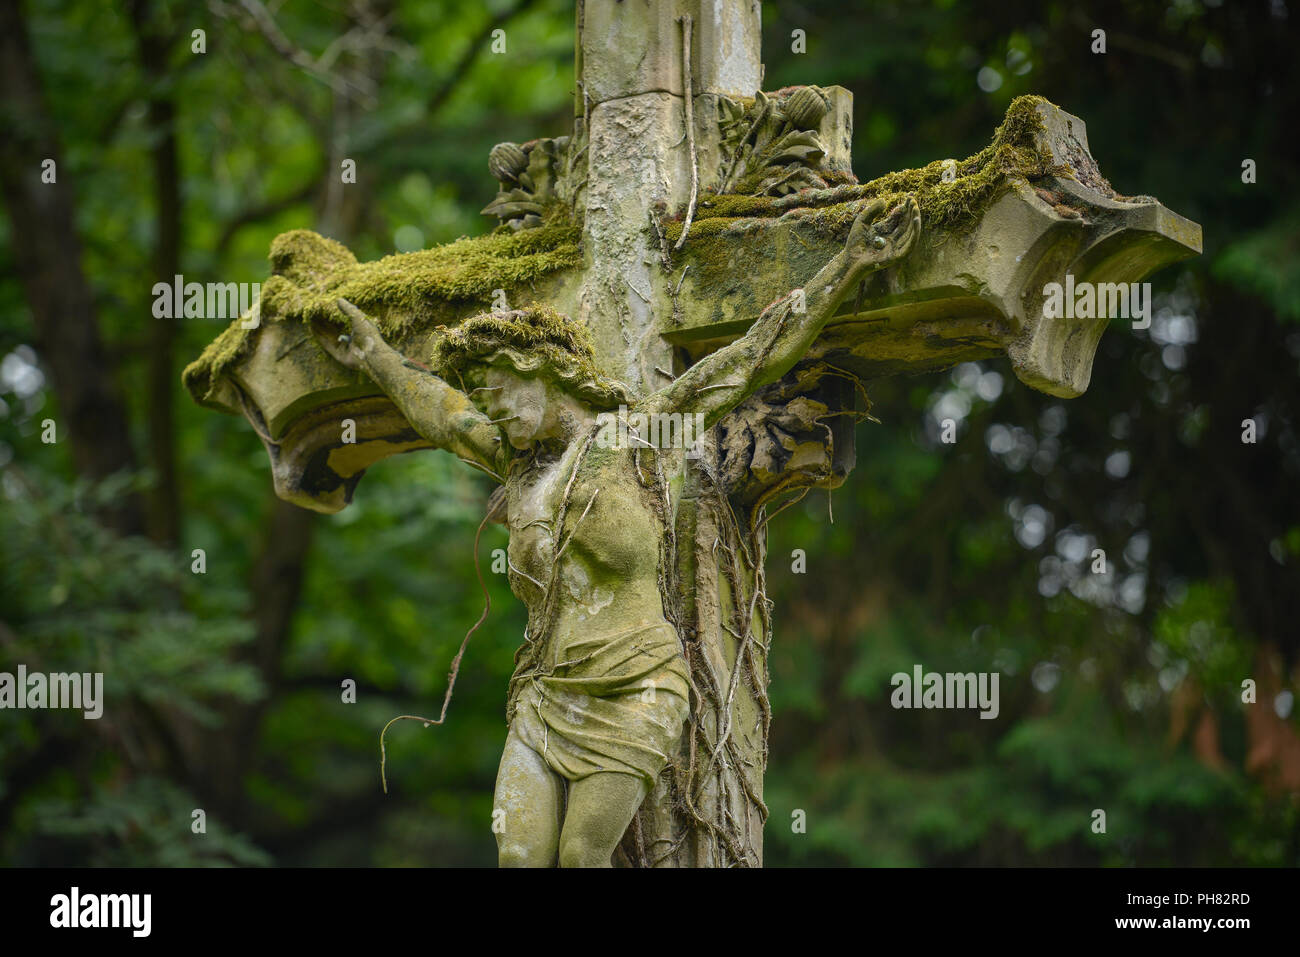 Kruzifix, Melaten-Friedhof, Aachener Strasse, Lindenthal, Koeln, Nordrhein-Westfalen, Deutschland Stock Photo